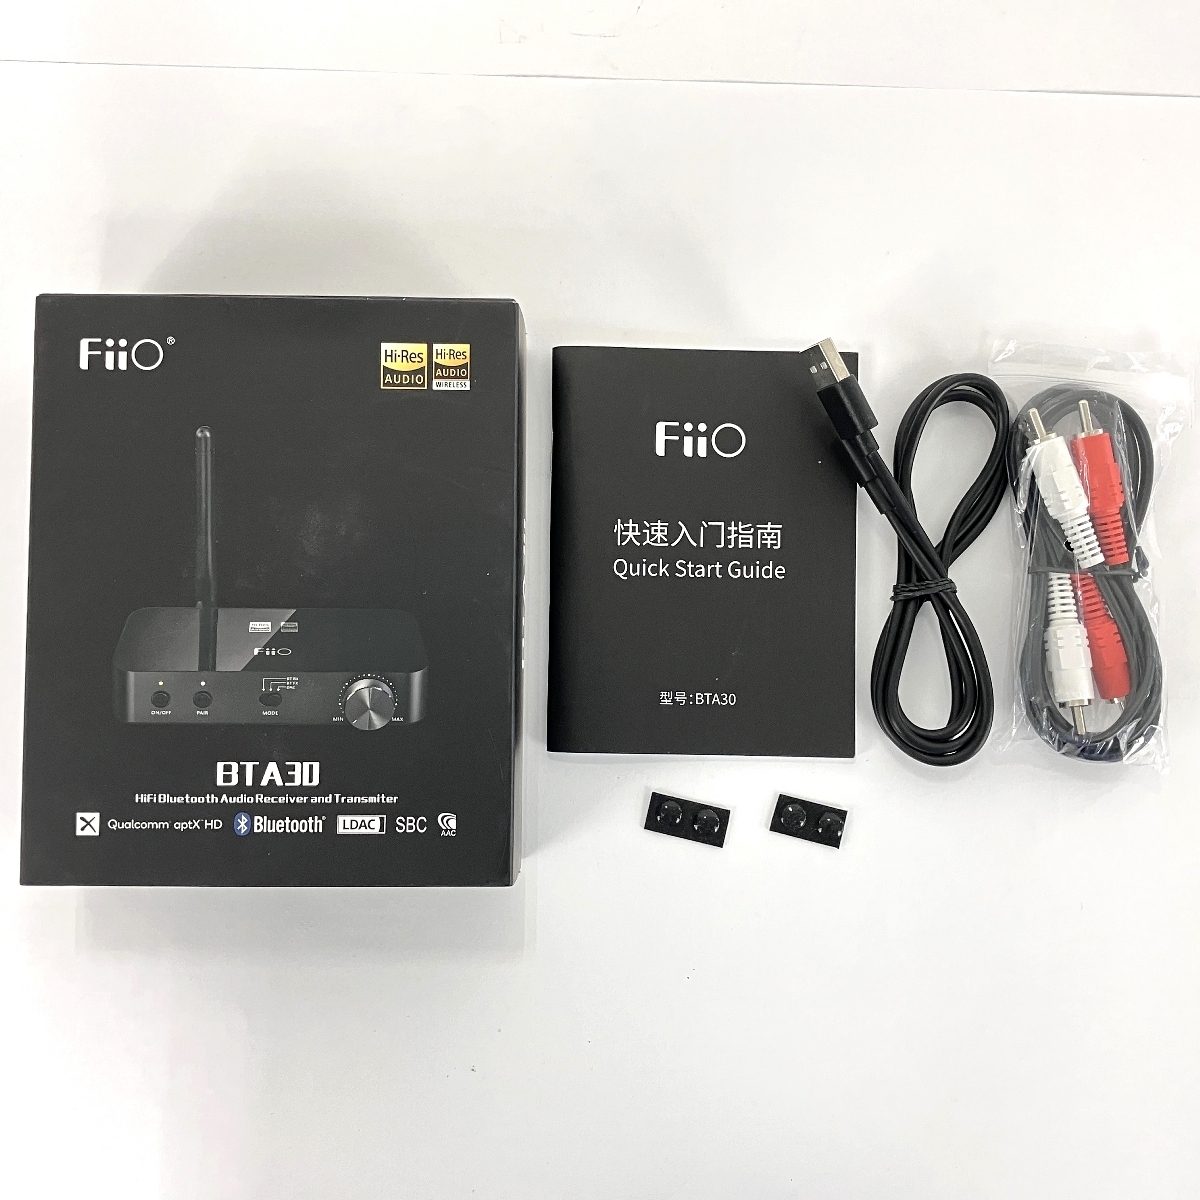 [ гарантия работы ] Fiio BTA30 Bluetooth ресивер передатчик USB DAC б/у хороший Y8852453